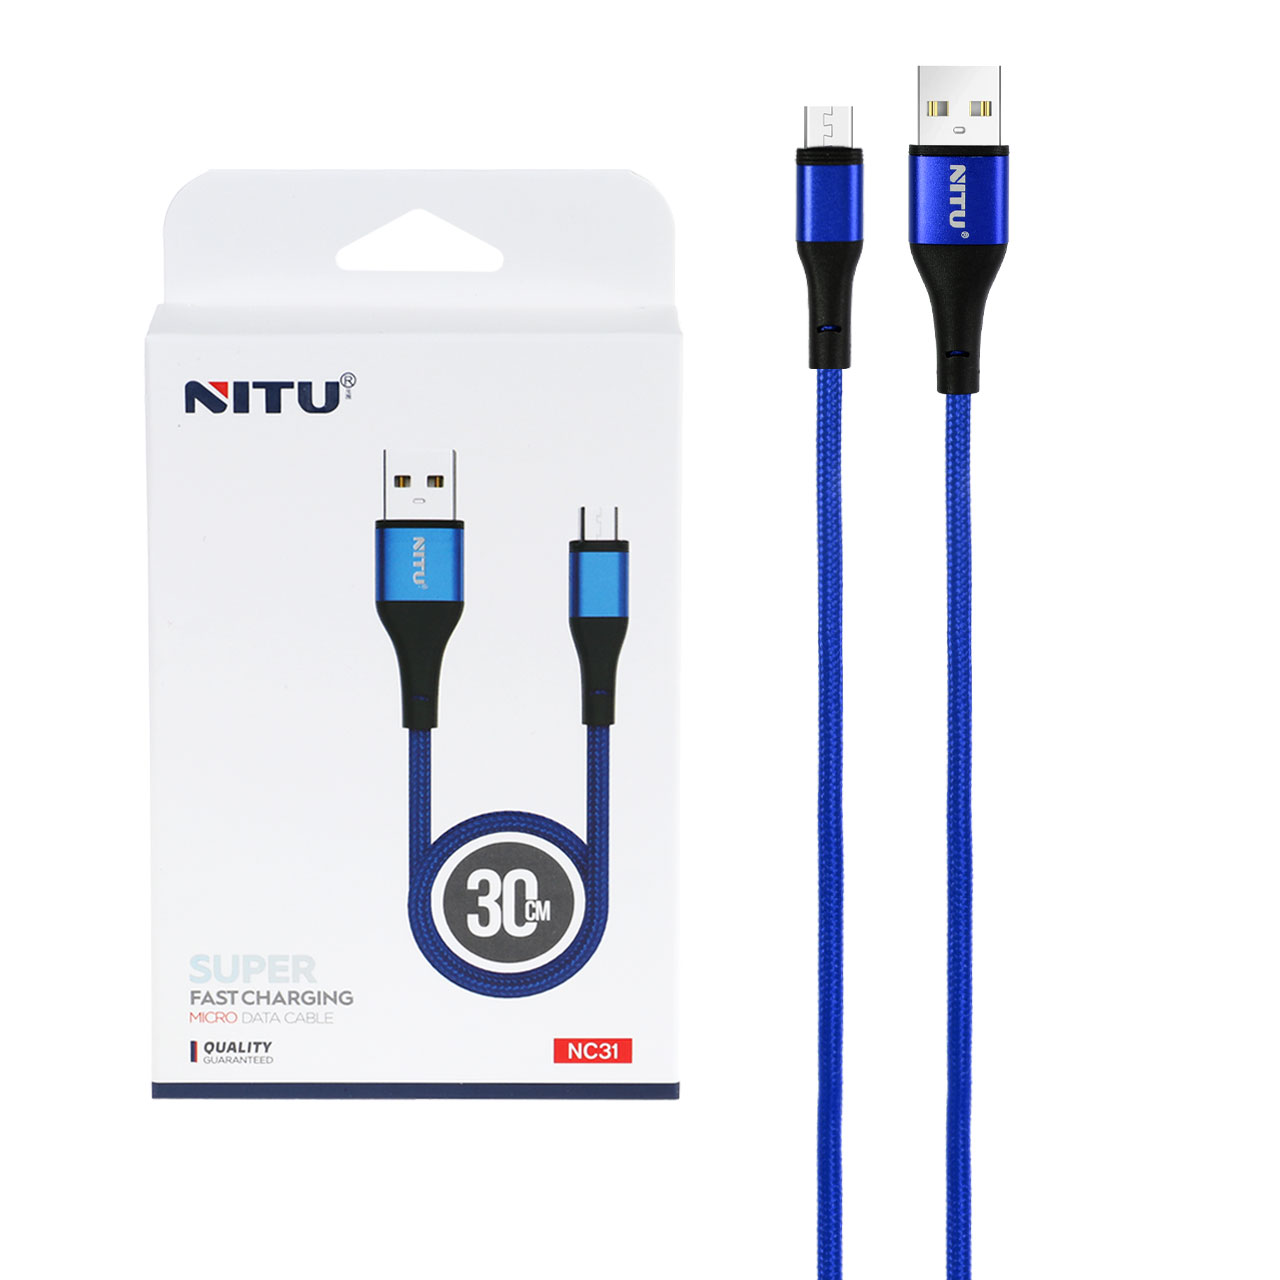 خرید کابل USB به Micro-usb نیتو NITU NC31 طول 30 سانتیمتر 2.4 آمپر | آرنیکموبایل